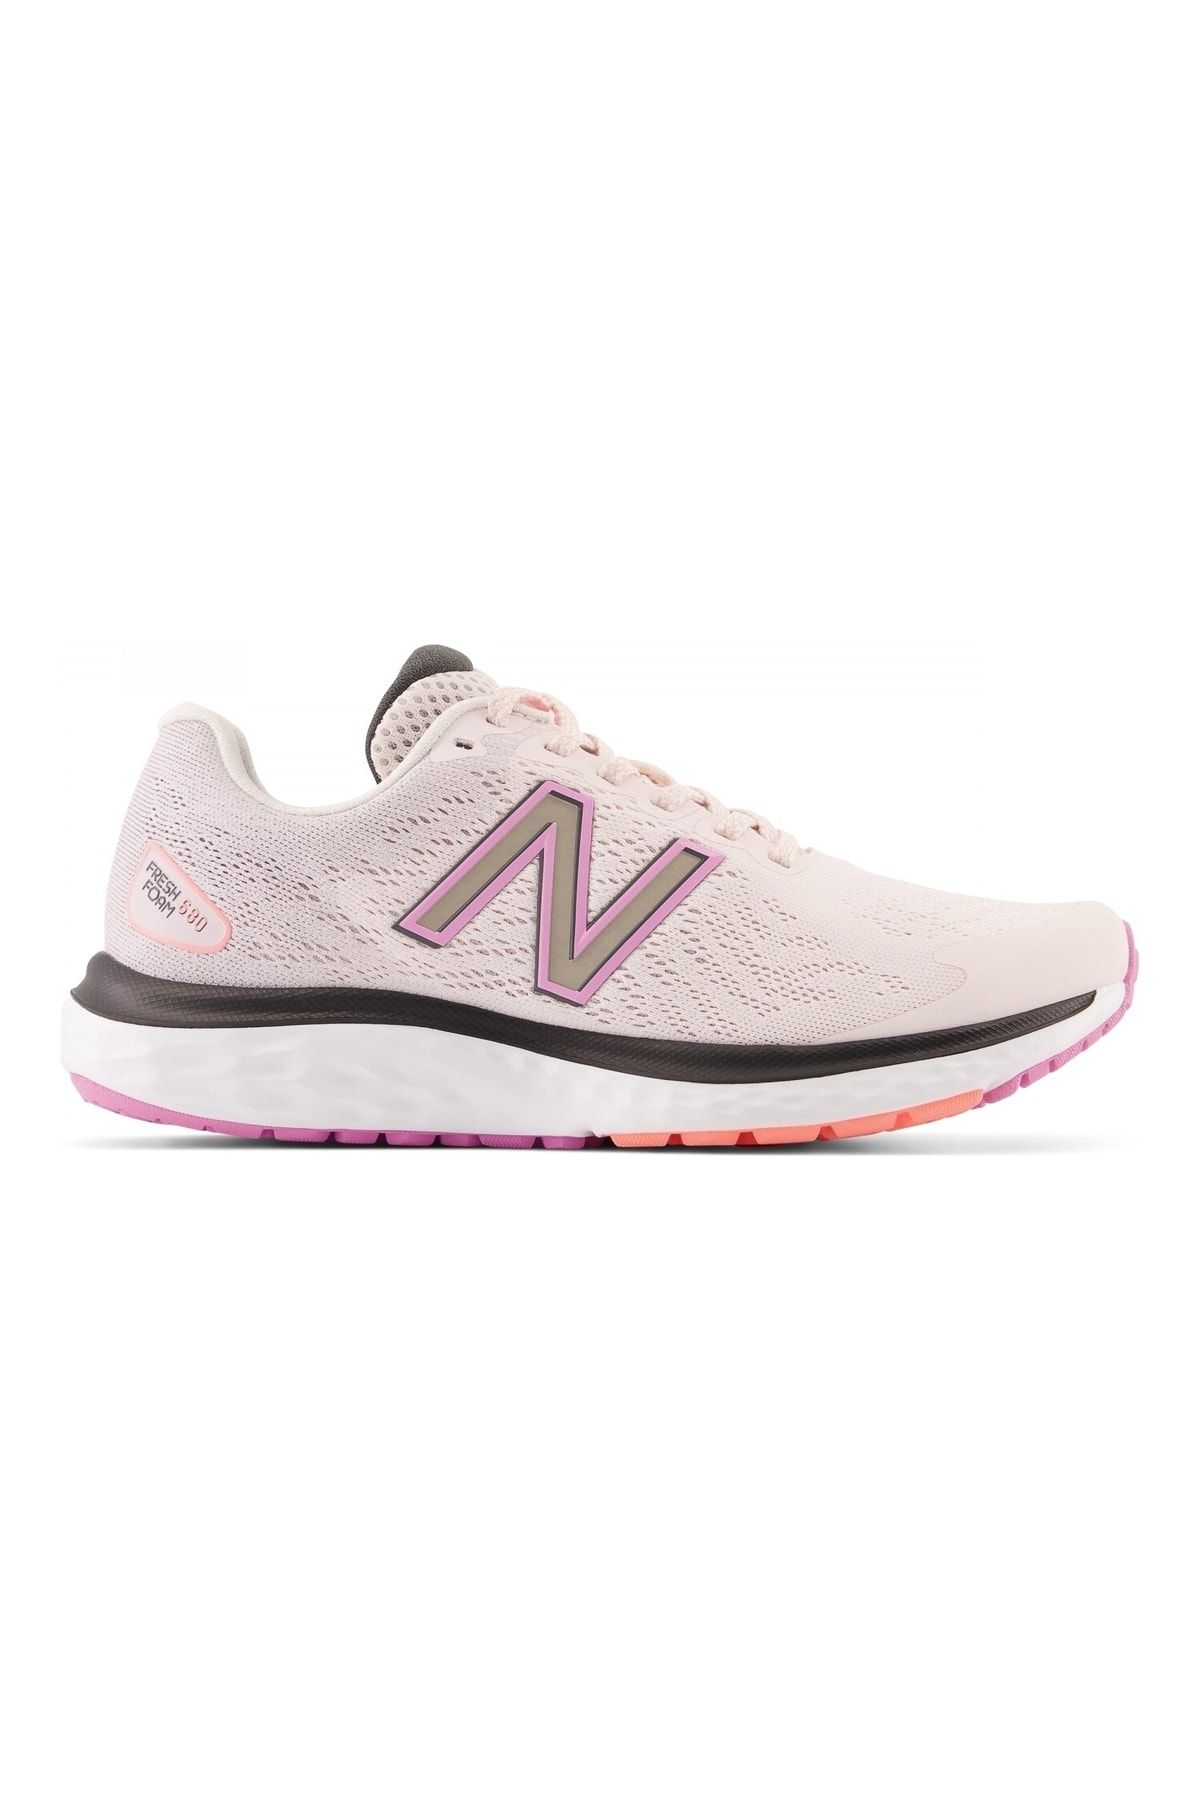 New Balance Nb Running Women Shoes